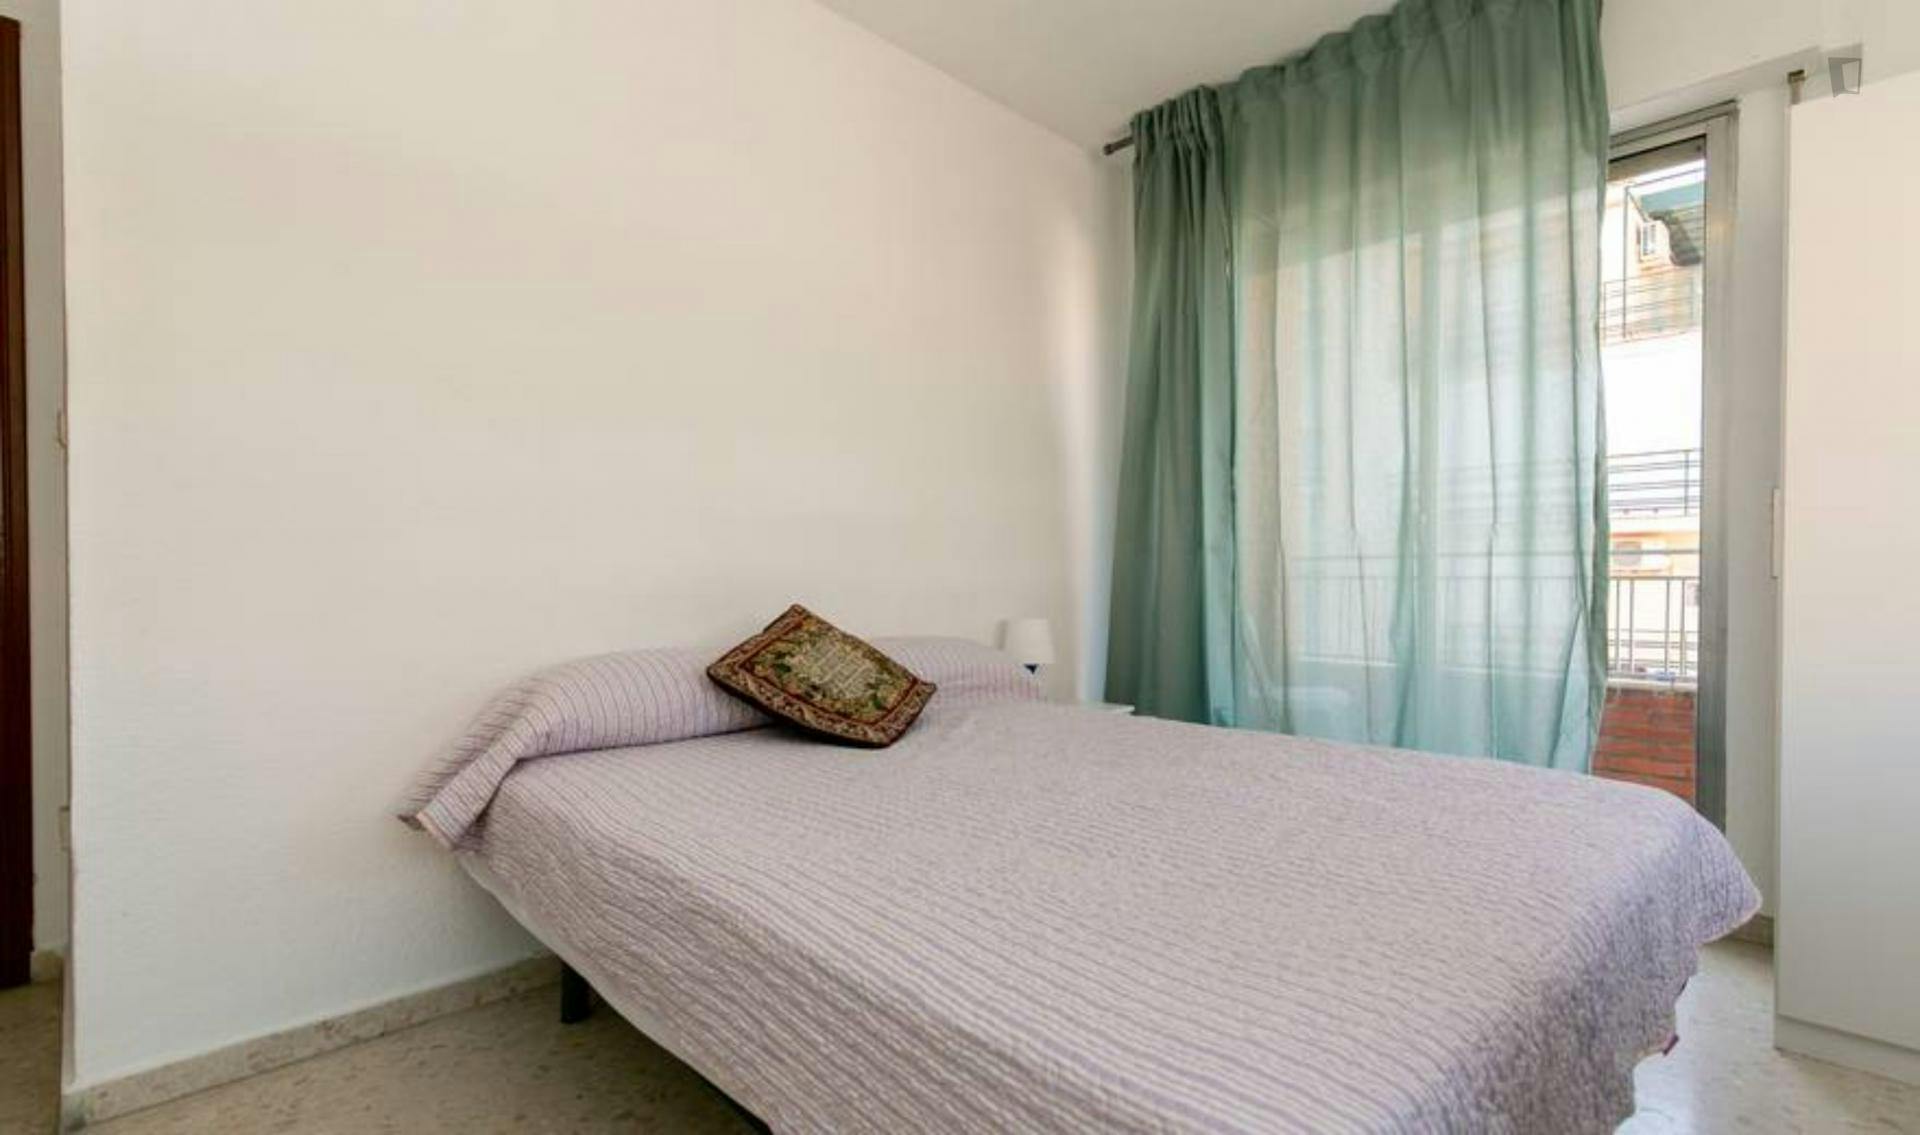 Double bedroom with a balcony, in Camino de Ronda